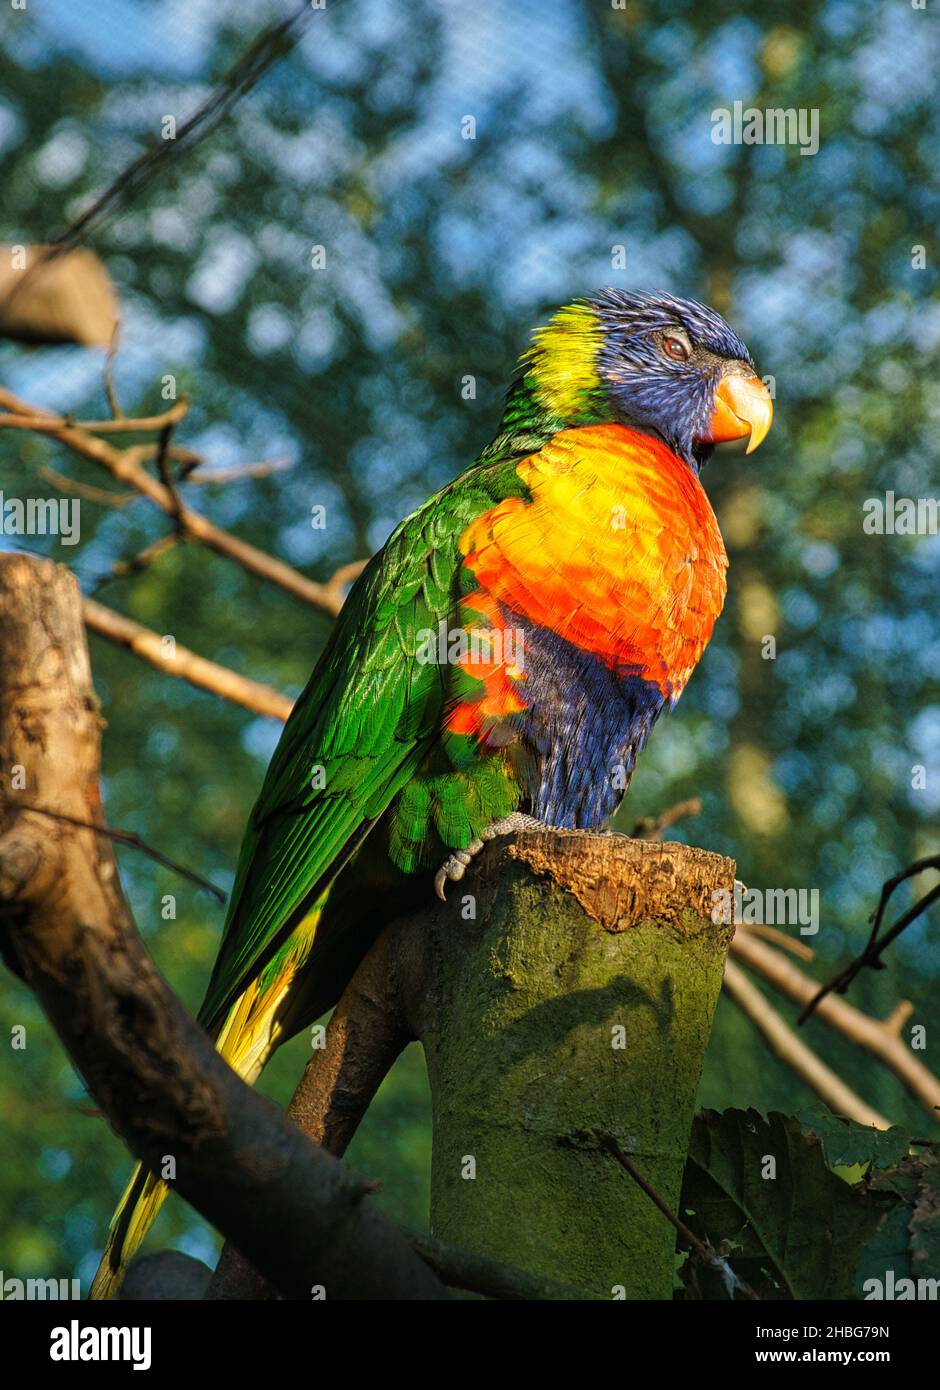 Lorikeet, kurz Lori genannt, sind papageienartige Vögel im bunten Gefieder. Sie sind sehr neugierig und schön anzusehen Stockfoto